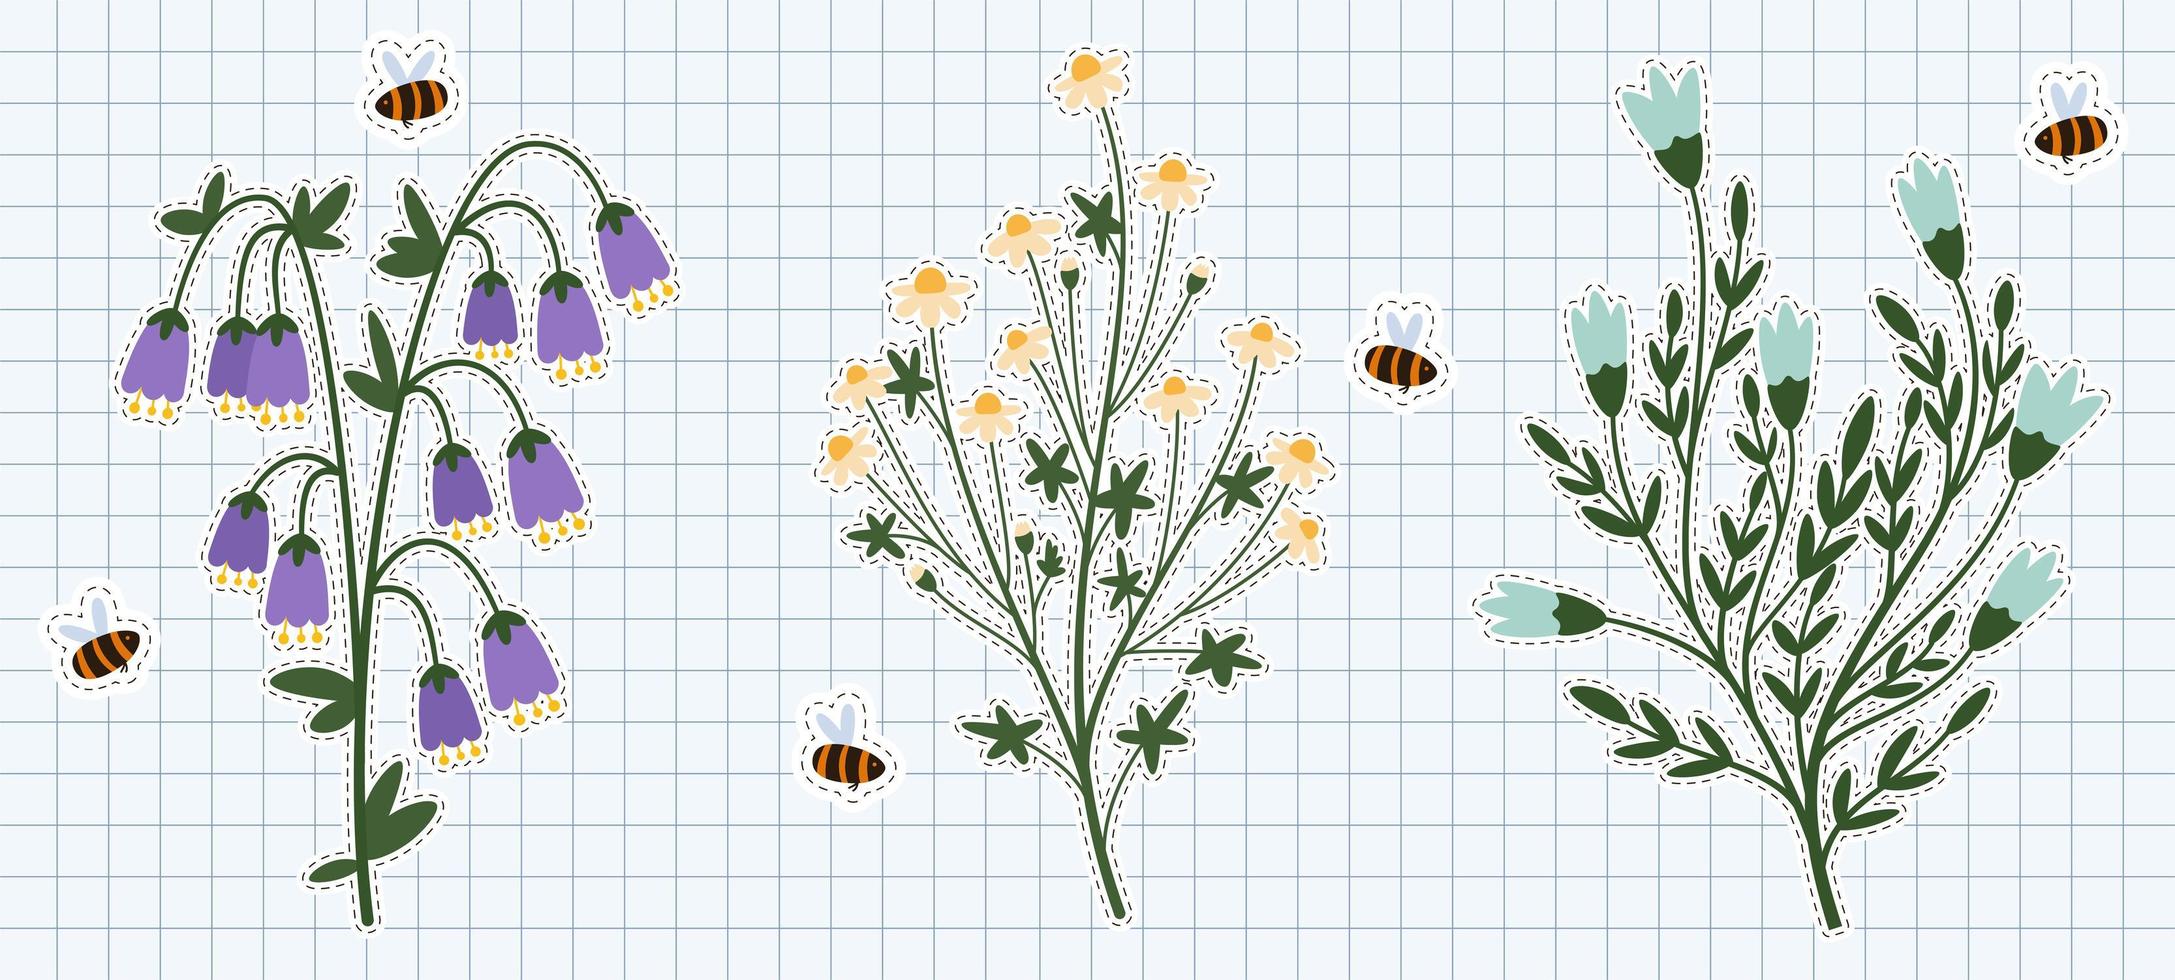 flores silvestres planas simples con abejas voladoras 2 vector